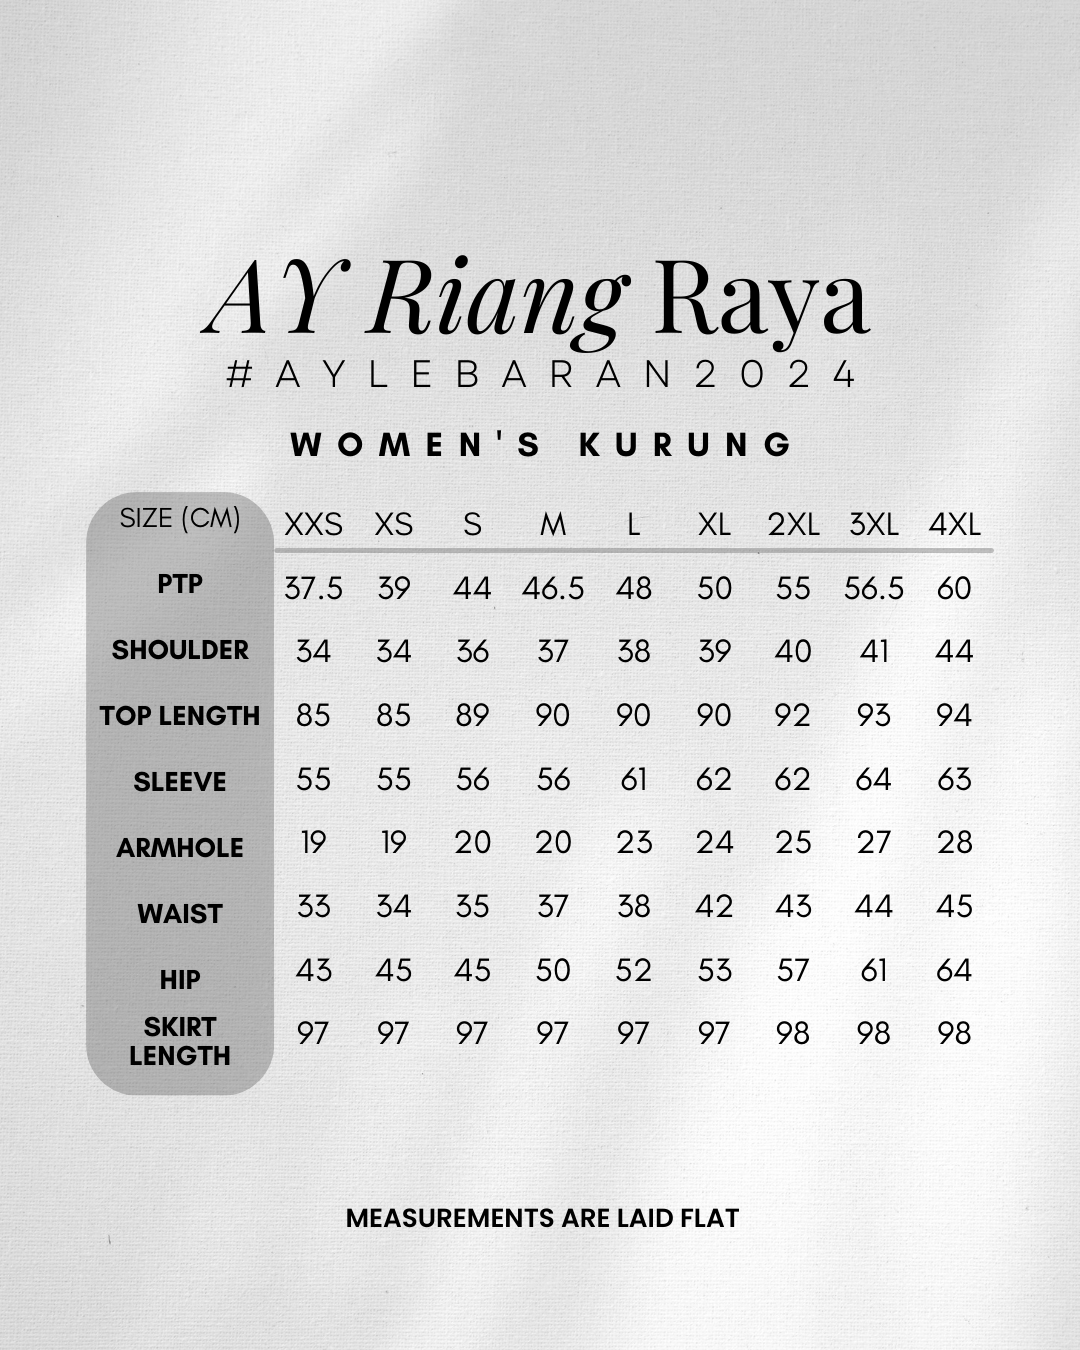 AYLEBARAN 2024 Ceria Women's Kurung Pahang